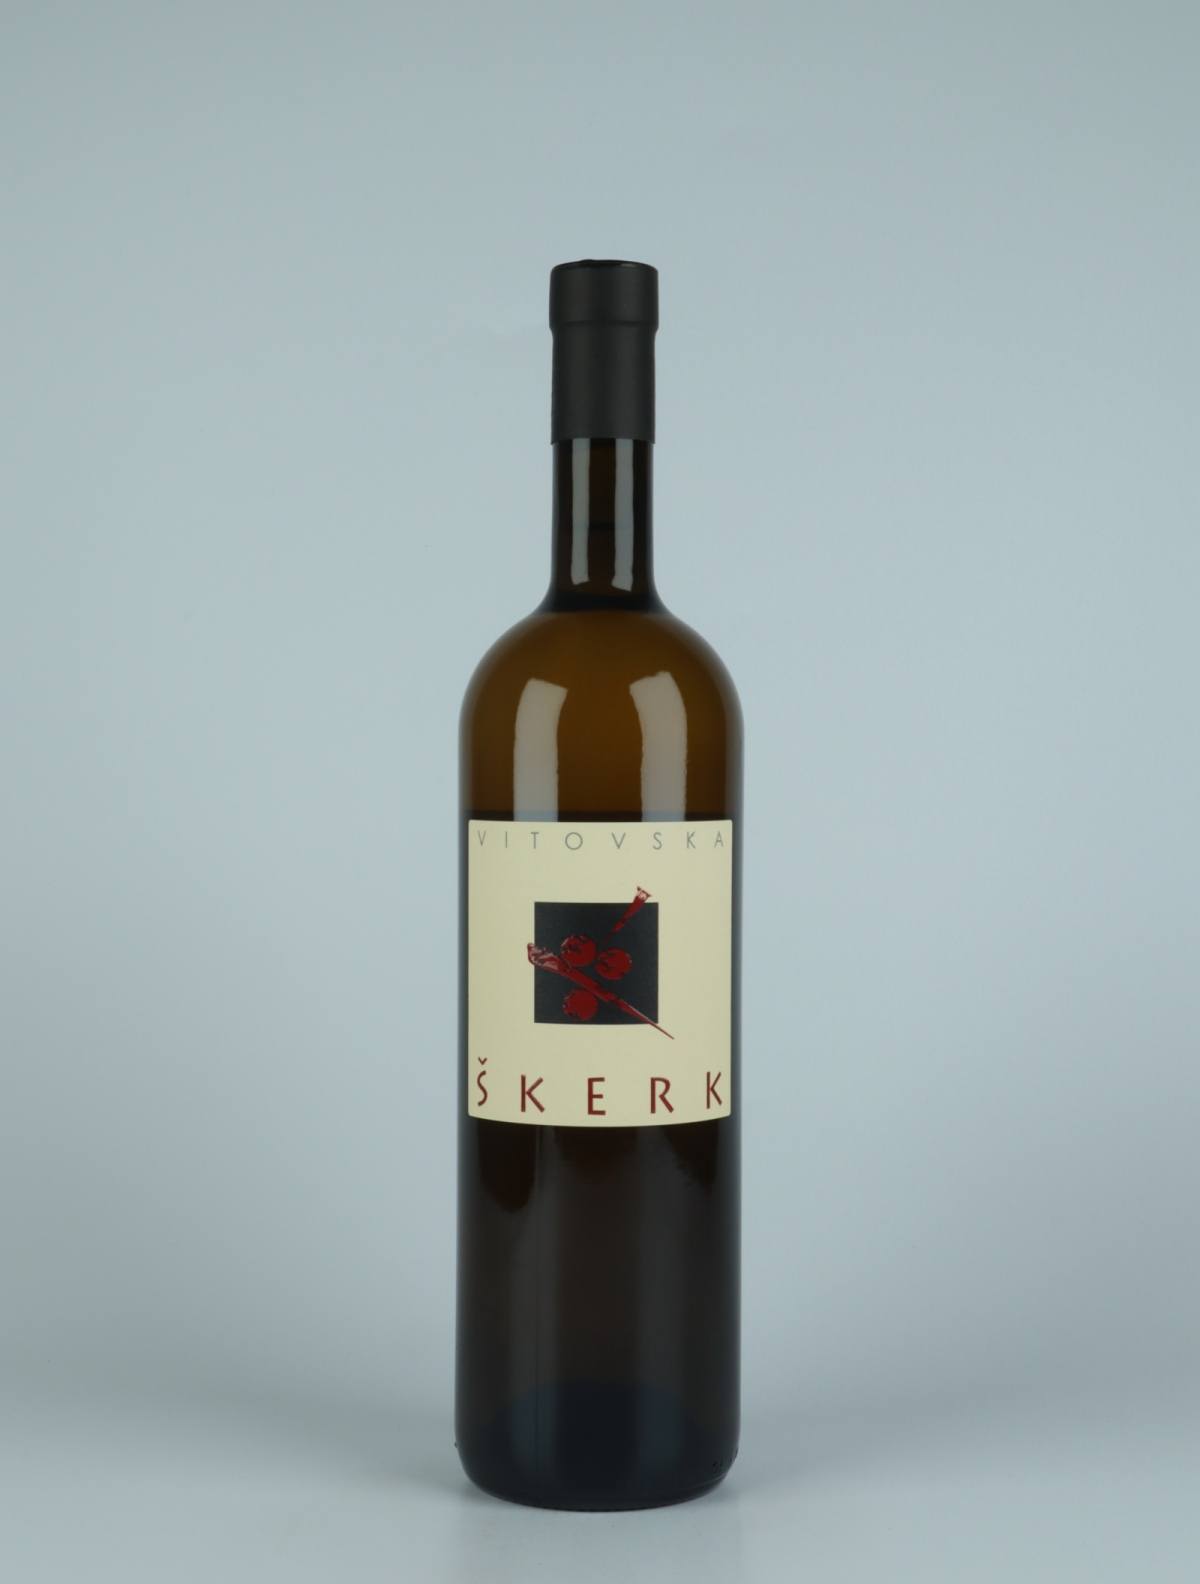 A bottle 2020 Vitovska Orange wine from Skerk, Friuli in Italy